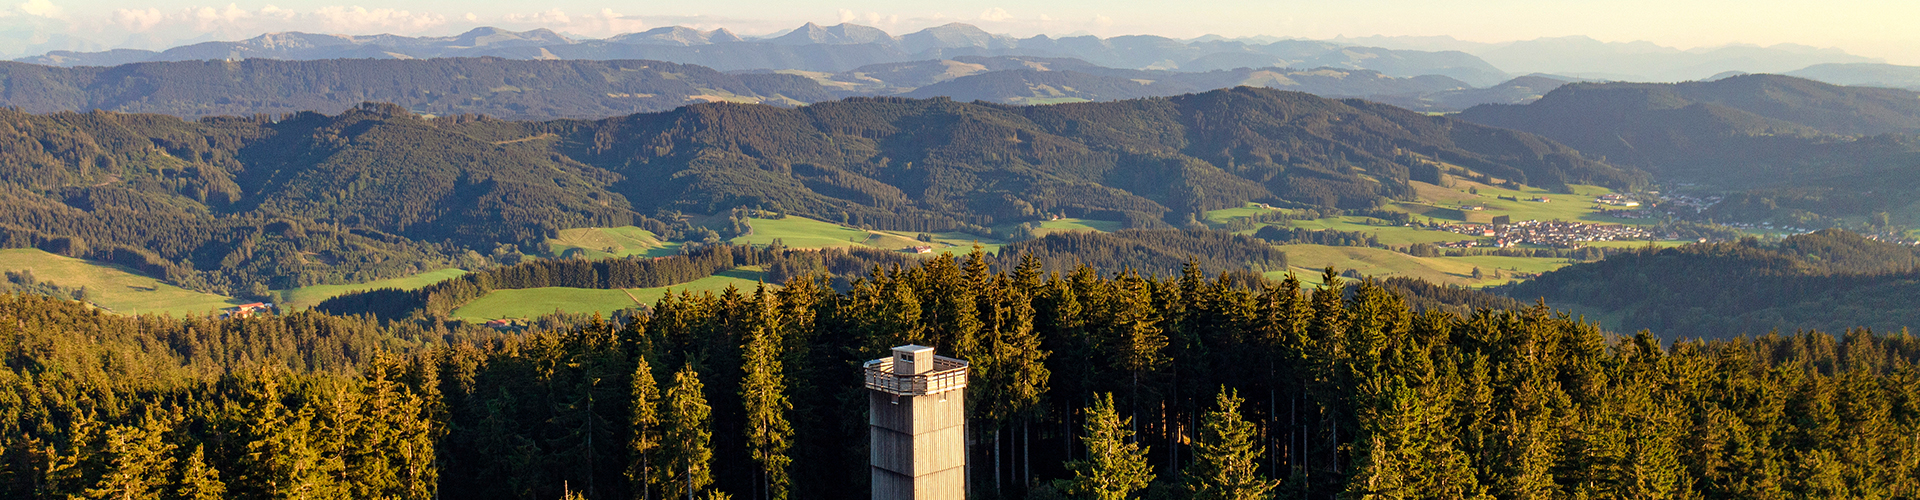 Turm auf einem bewaldeten Hügel bei klarer Wetterlage